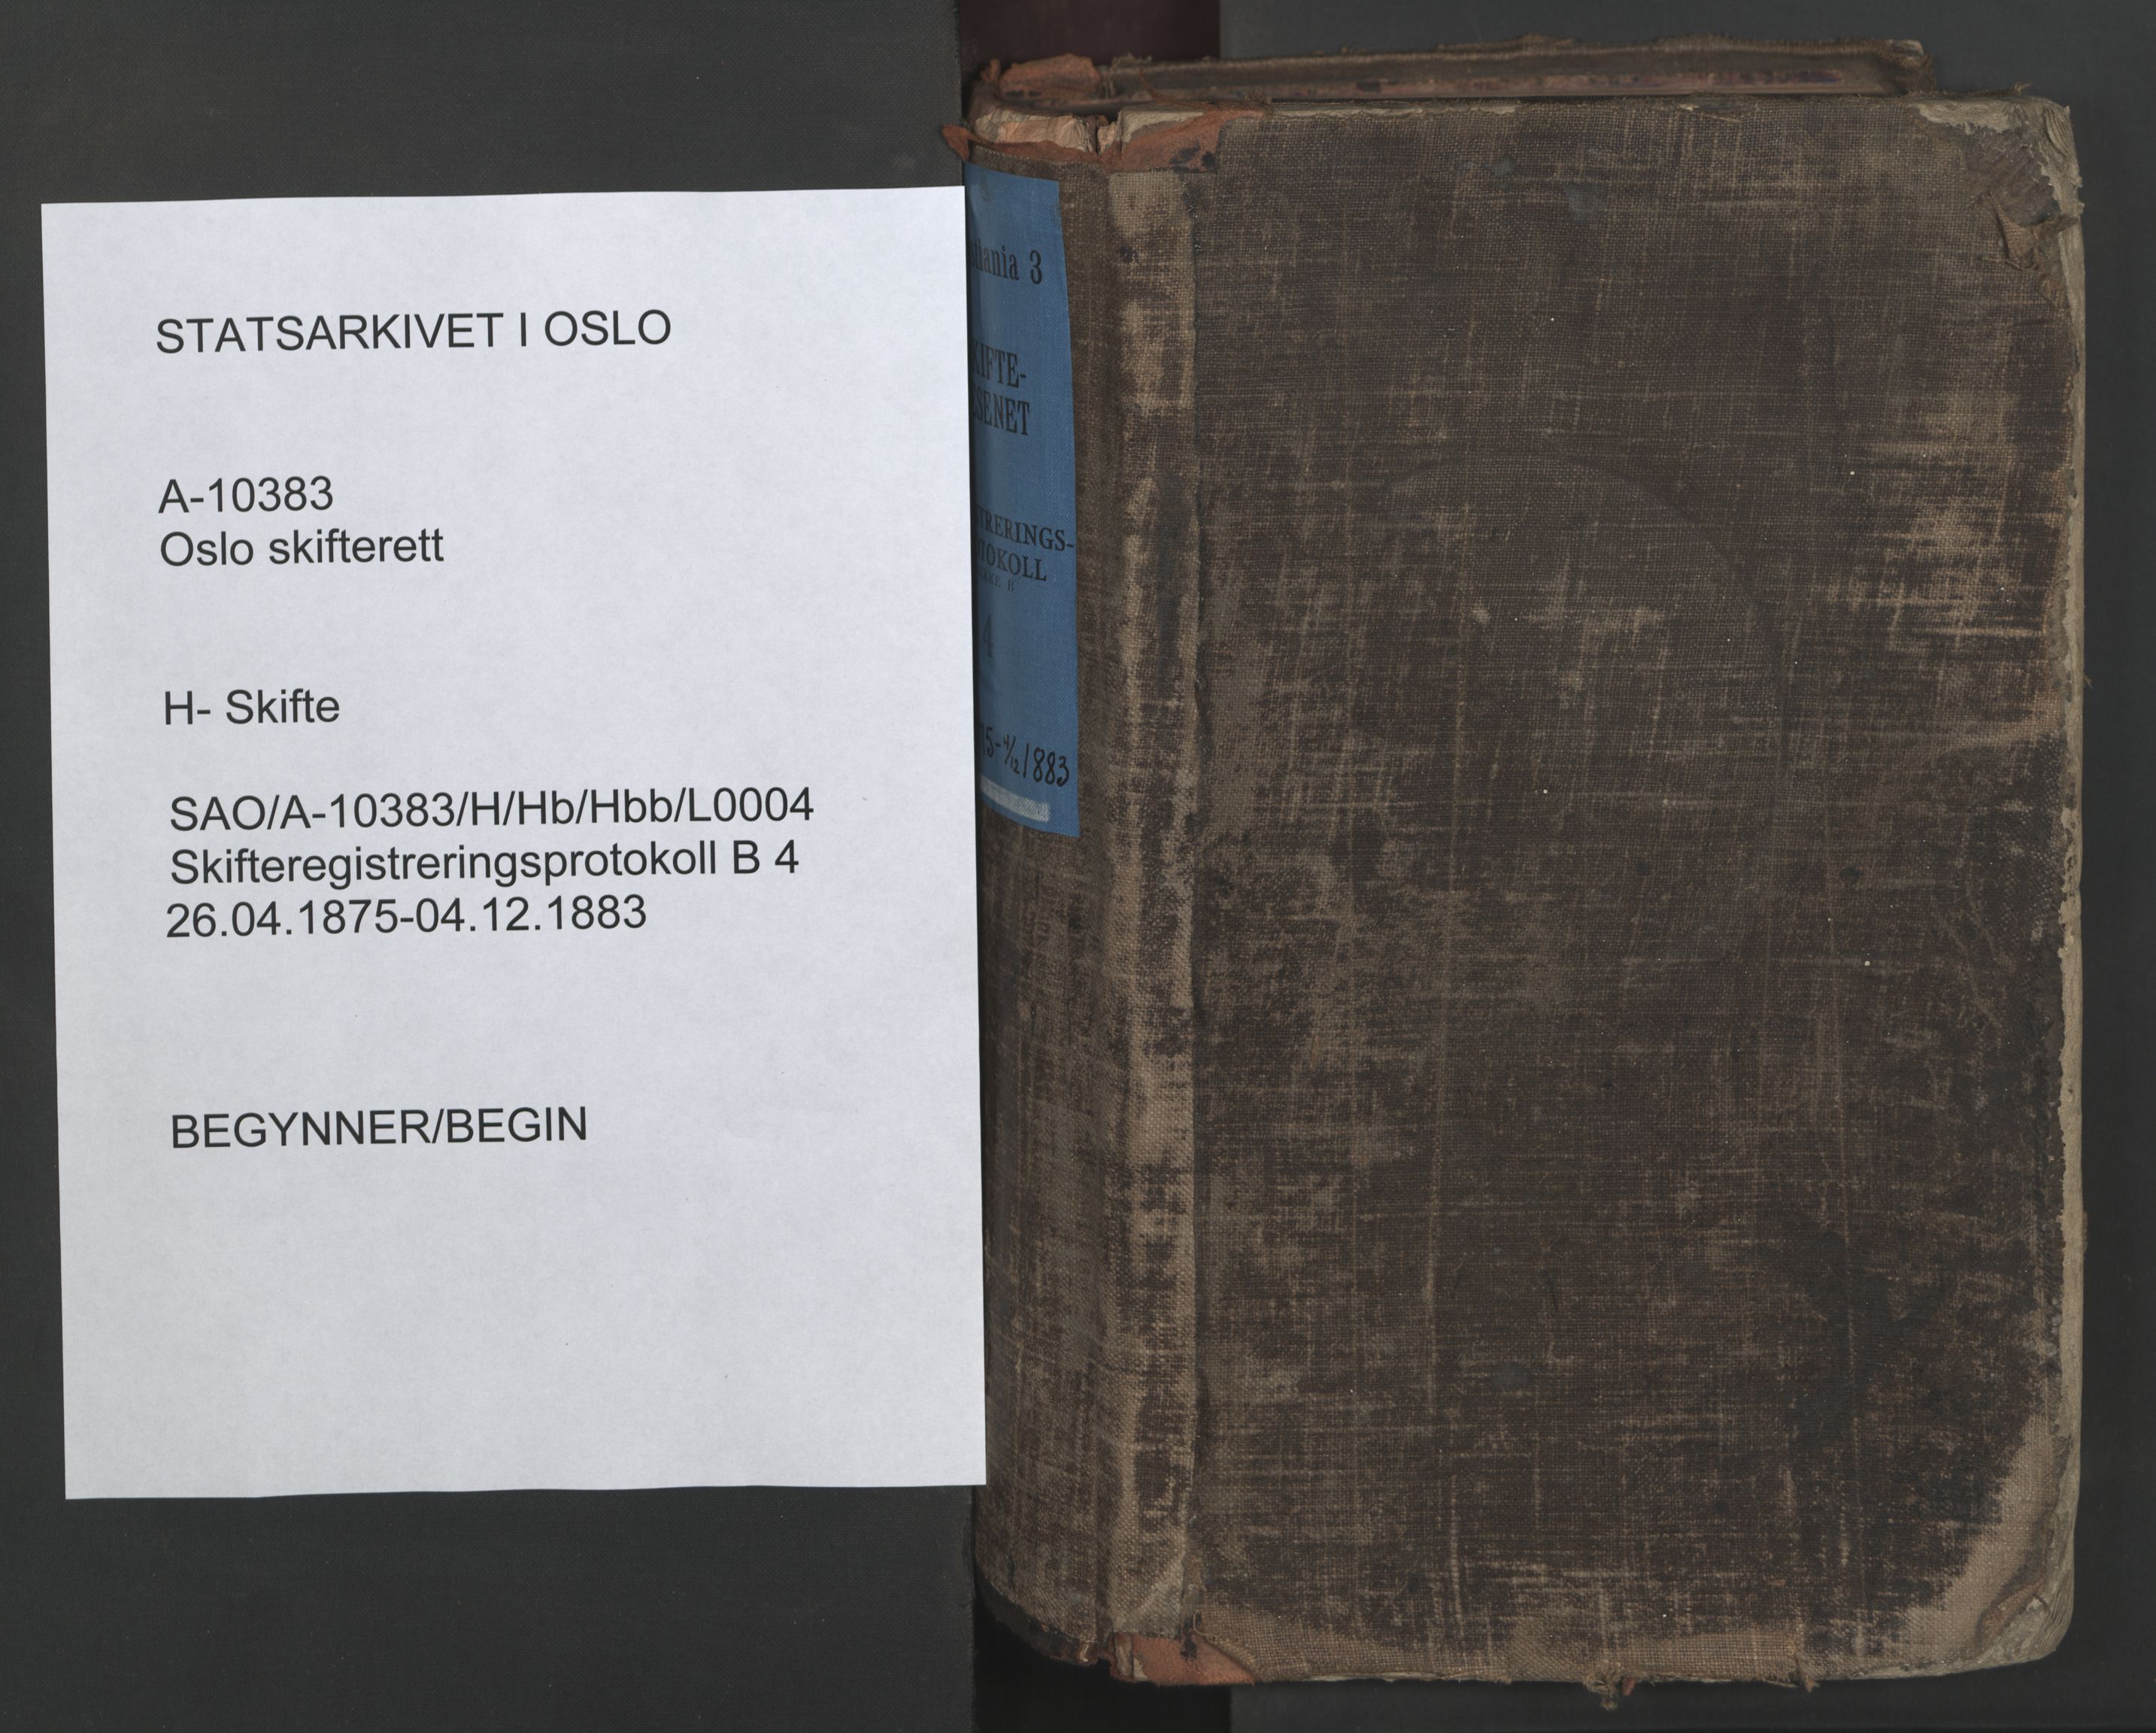 Oslo skifterett, SAO/A-10383/H/Hb/Hbb/L0004: Skifteregistreringsprotokoll, 1875-1883